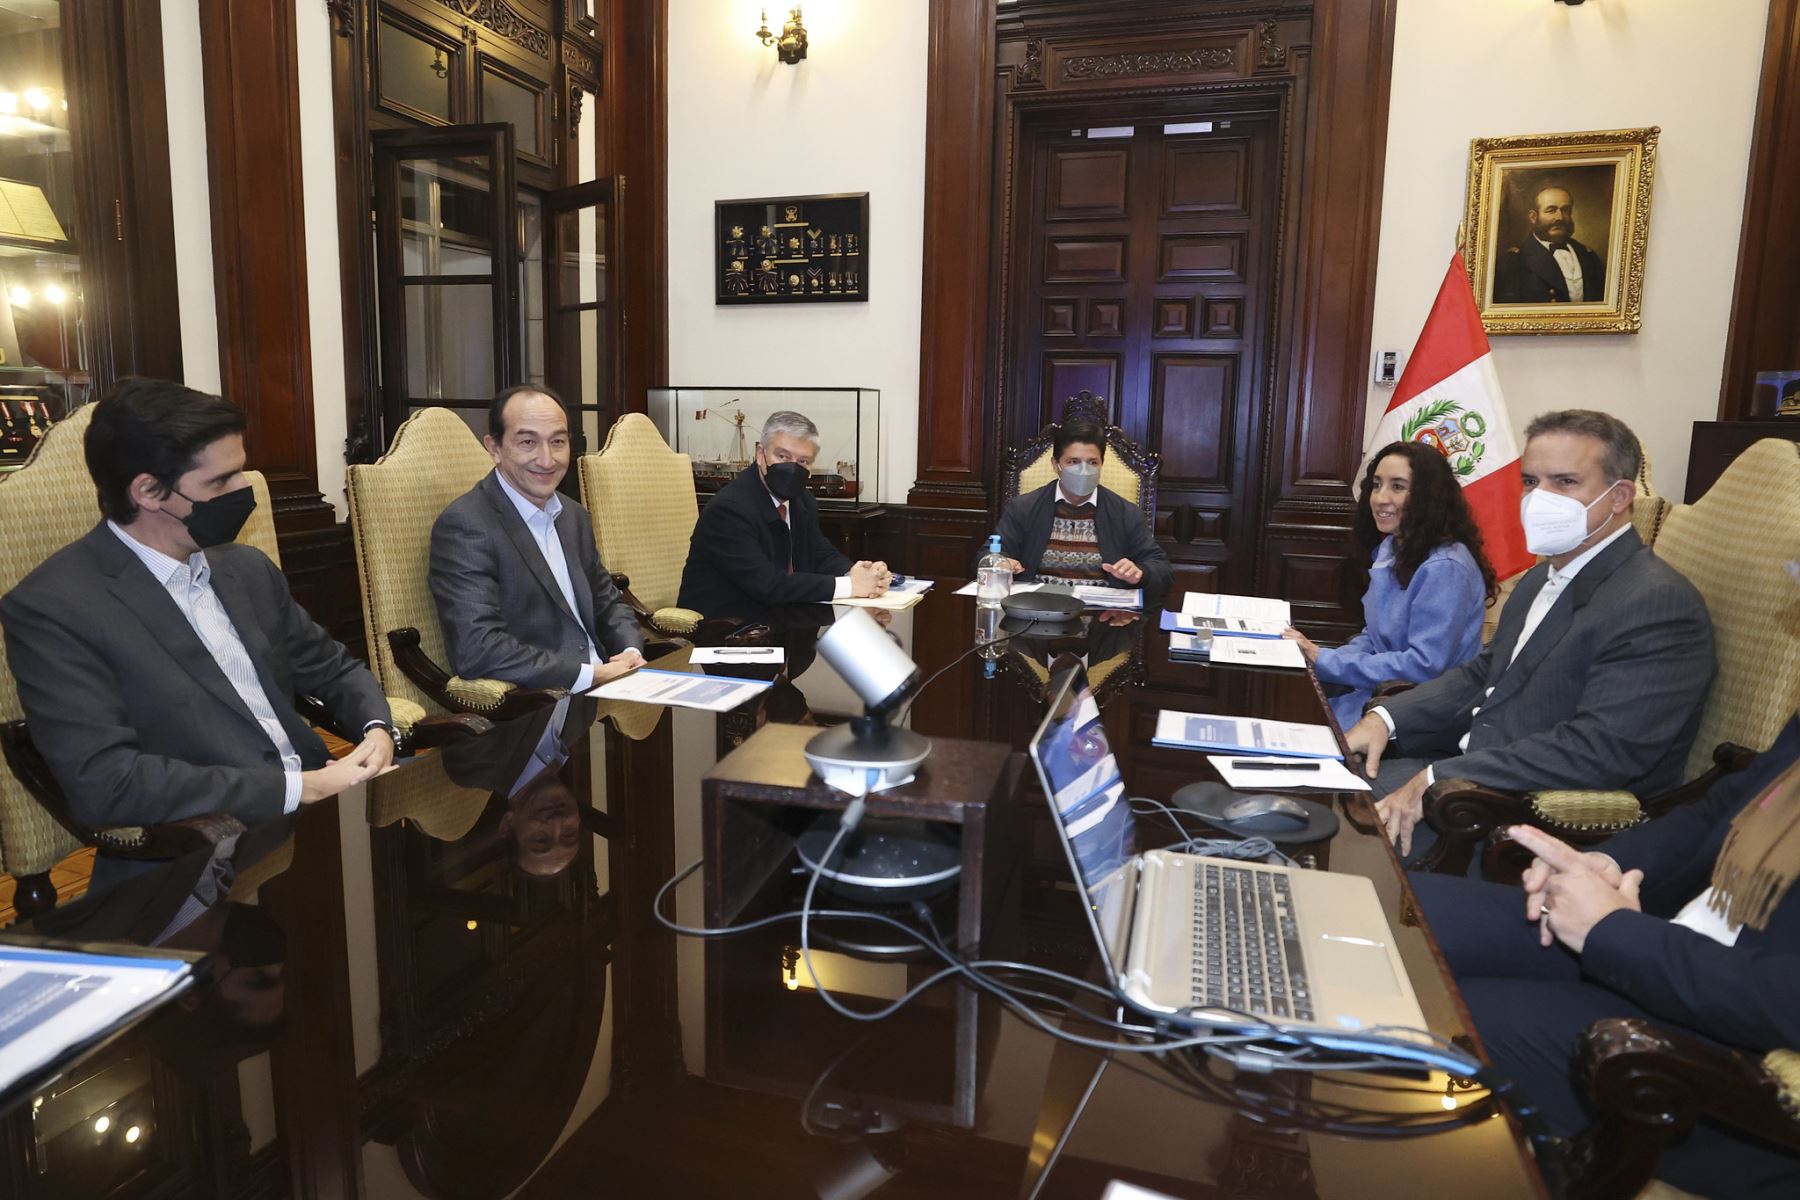 El presidente Pedro Castillo recibe en Palacio de Gobierno, a los representantes de las AFP para evaluar los mecanismos adecuados de una reforma del Sistema Nacional de Pensiones, para que los peruanos accedan a una jubilación justa.
Foto: ANDINA/Prensa Presidencia